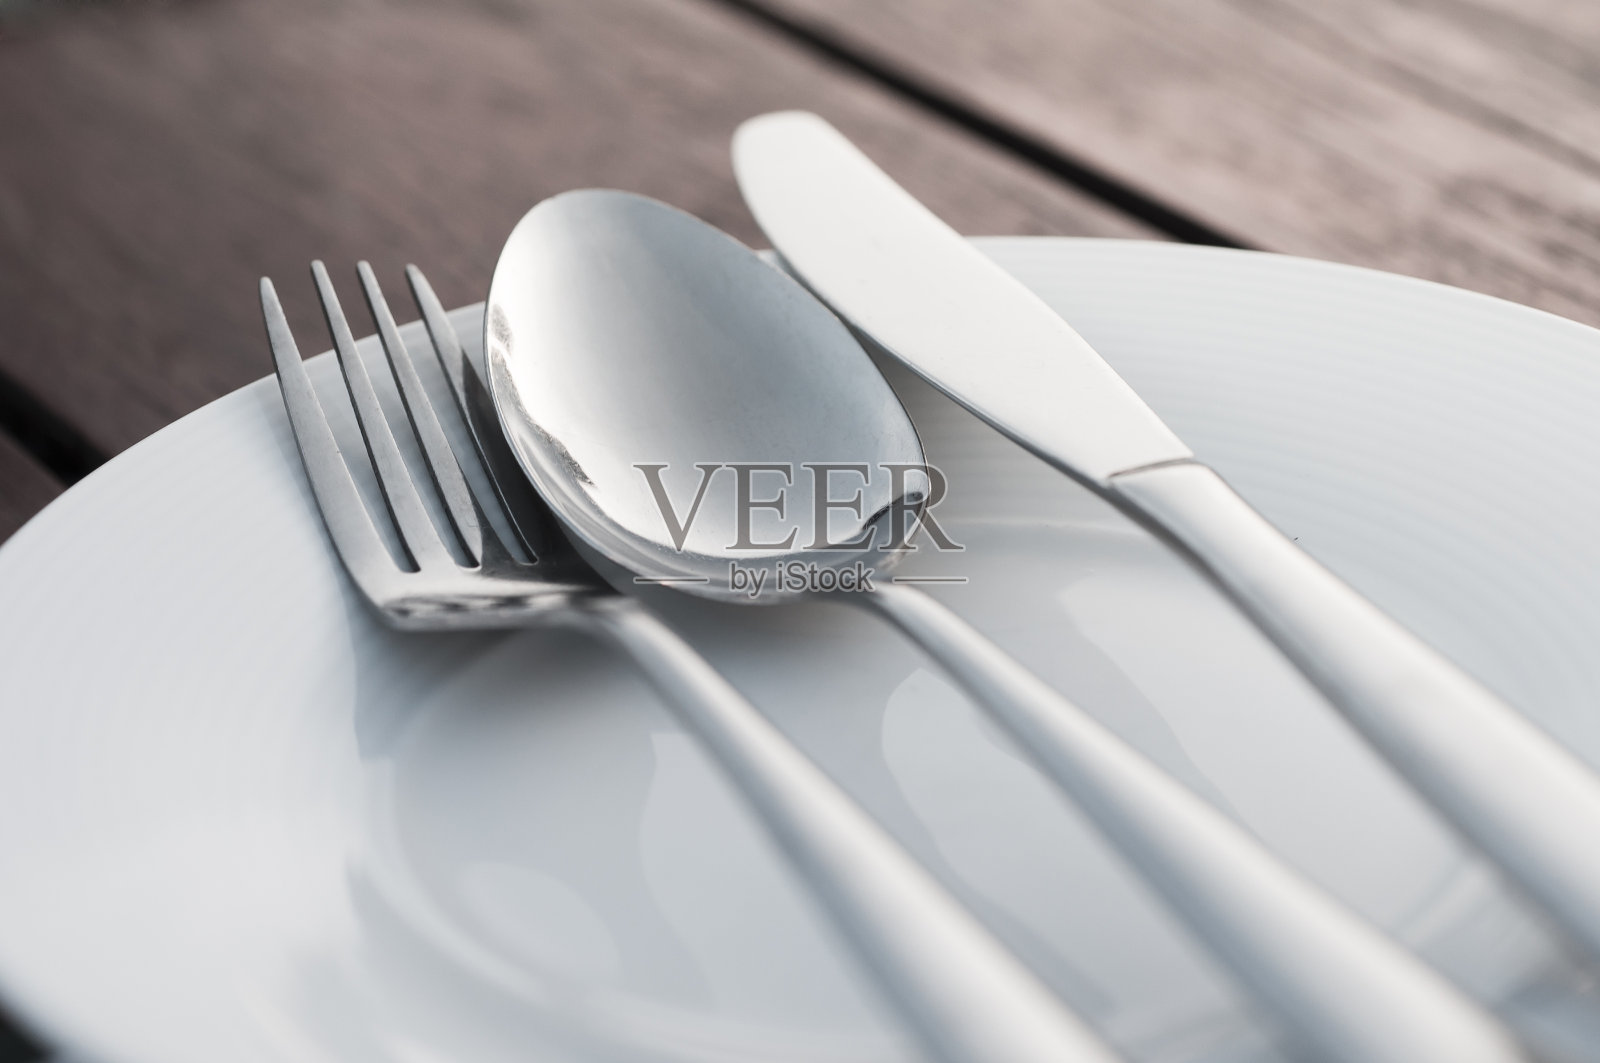 叉子、勺子和刀放在瓷盘上照片摄影图片